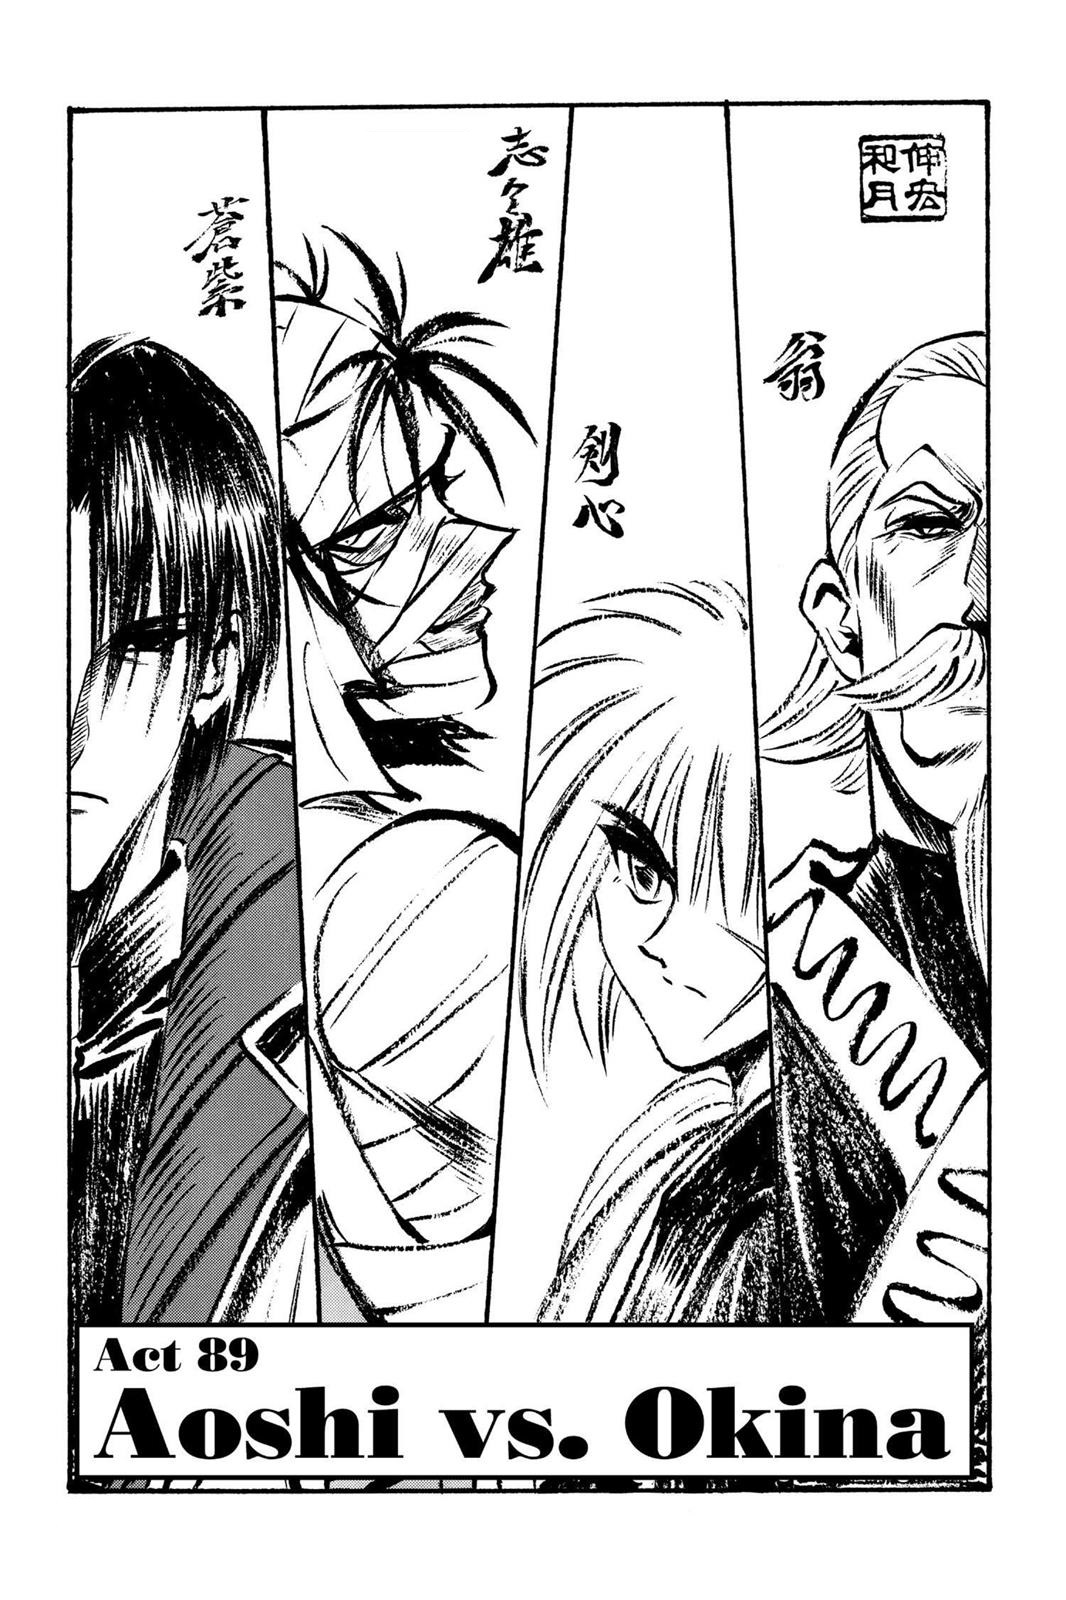 Aoshi vs Kenshin